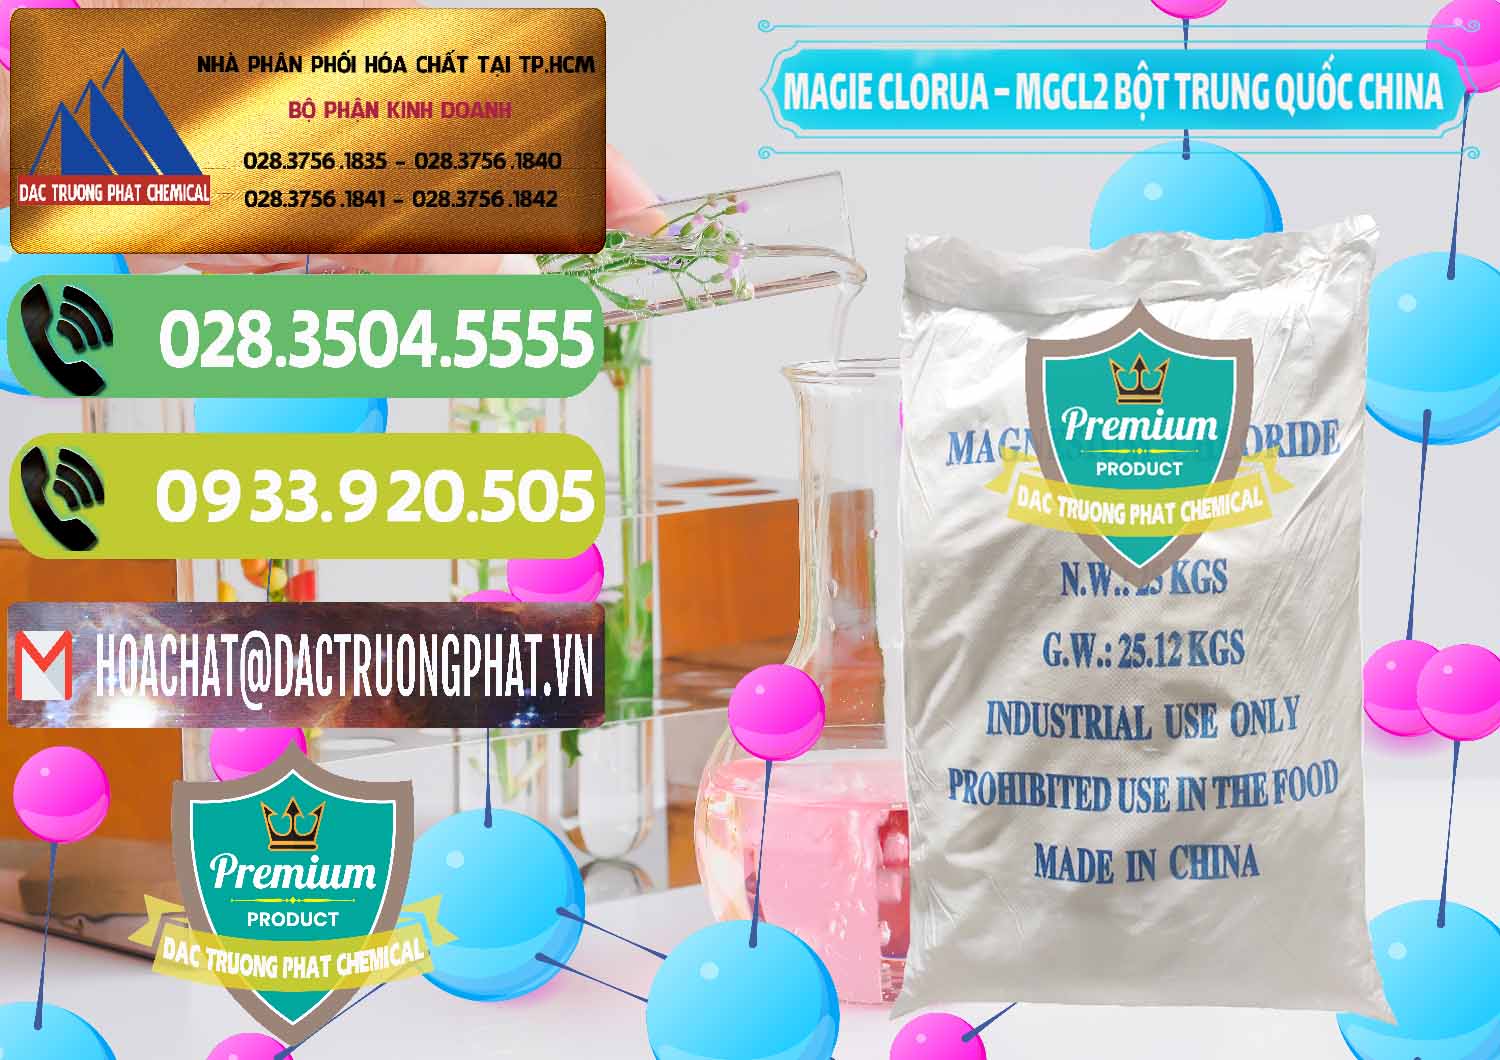 Đơn vị kinh doanh & bán Magie Clorua – MGCL2 96% Dạng Bột Bao Chữ Xanh Trung Quốc China - 0207 - Công ty cung cấp & phân phối hóa chất tại TP.HCM - hoachatmientay.vn